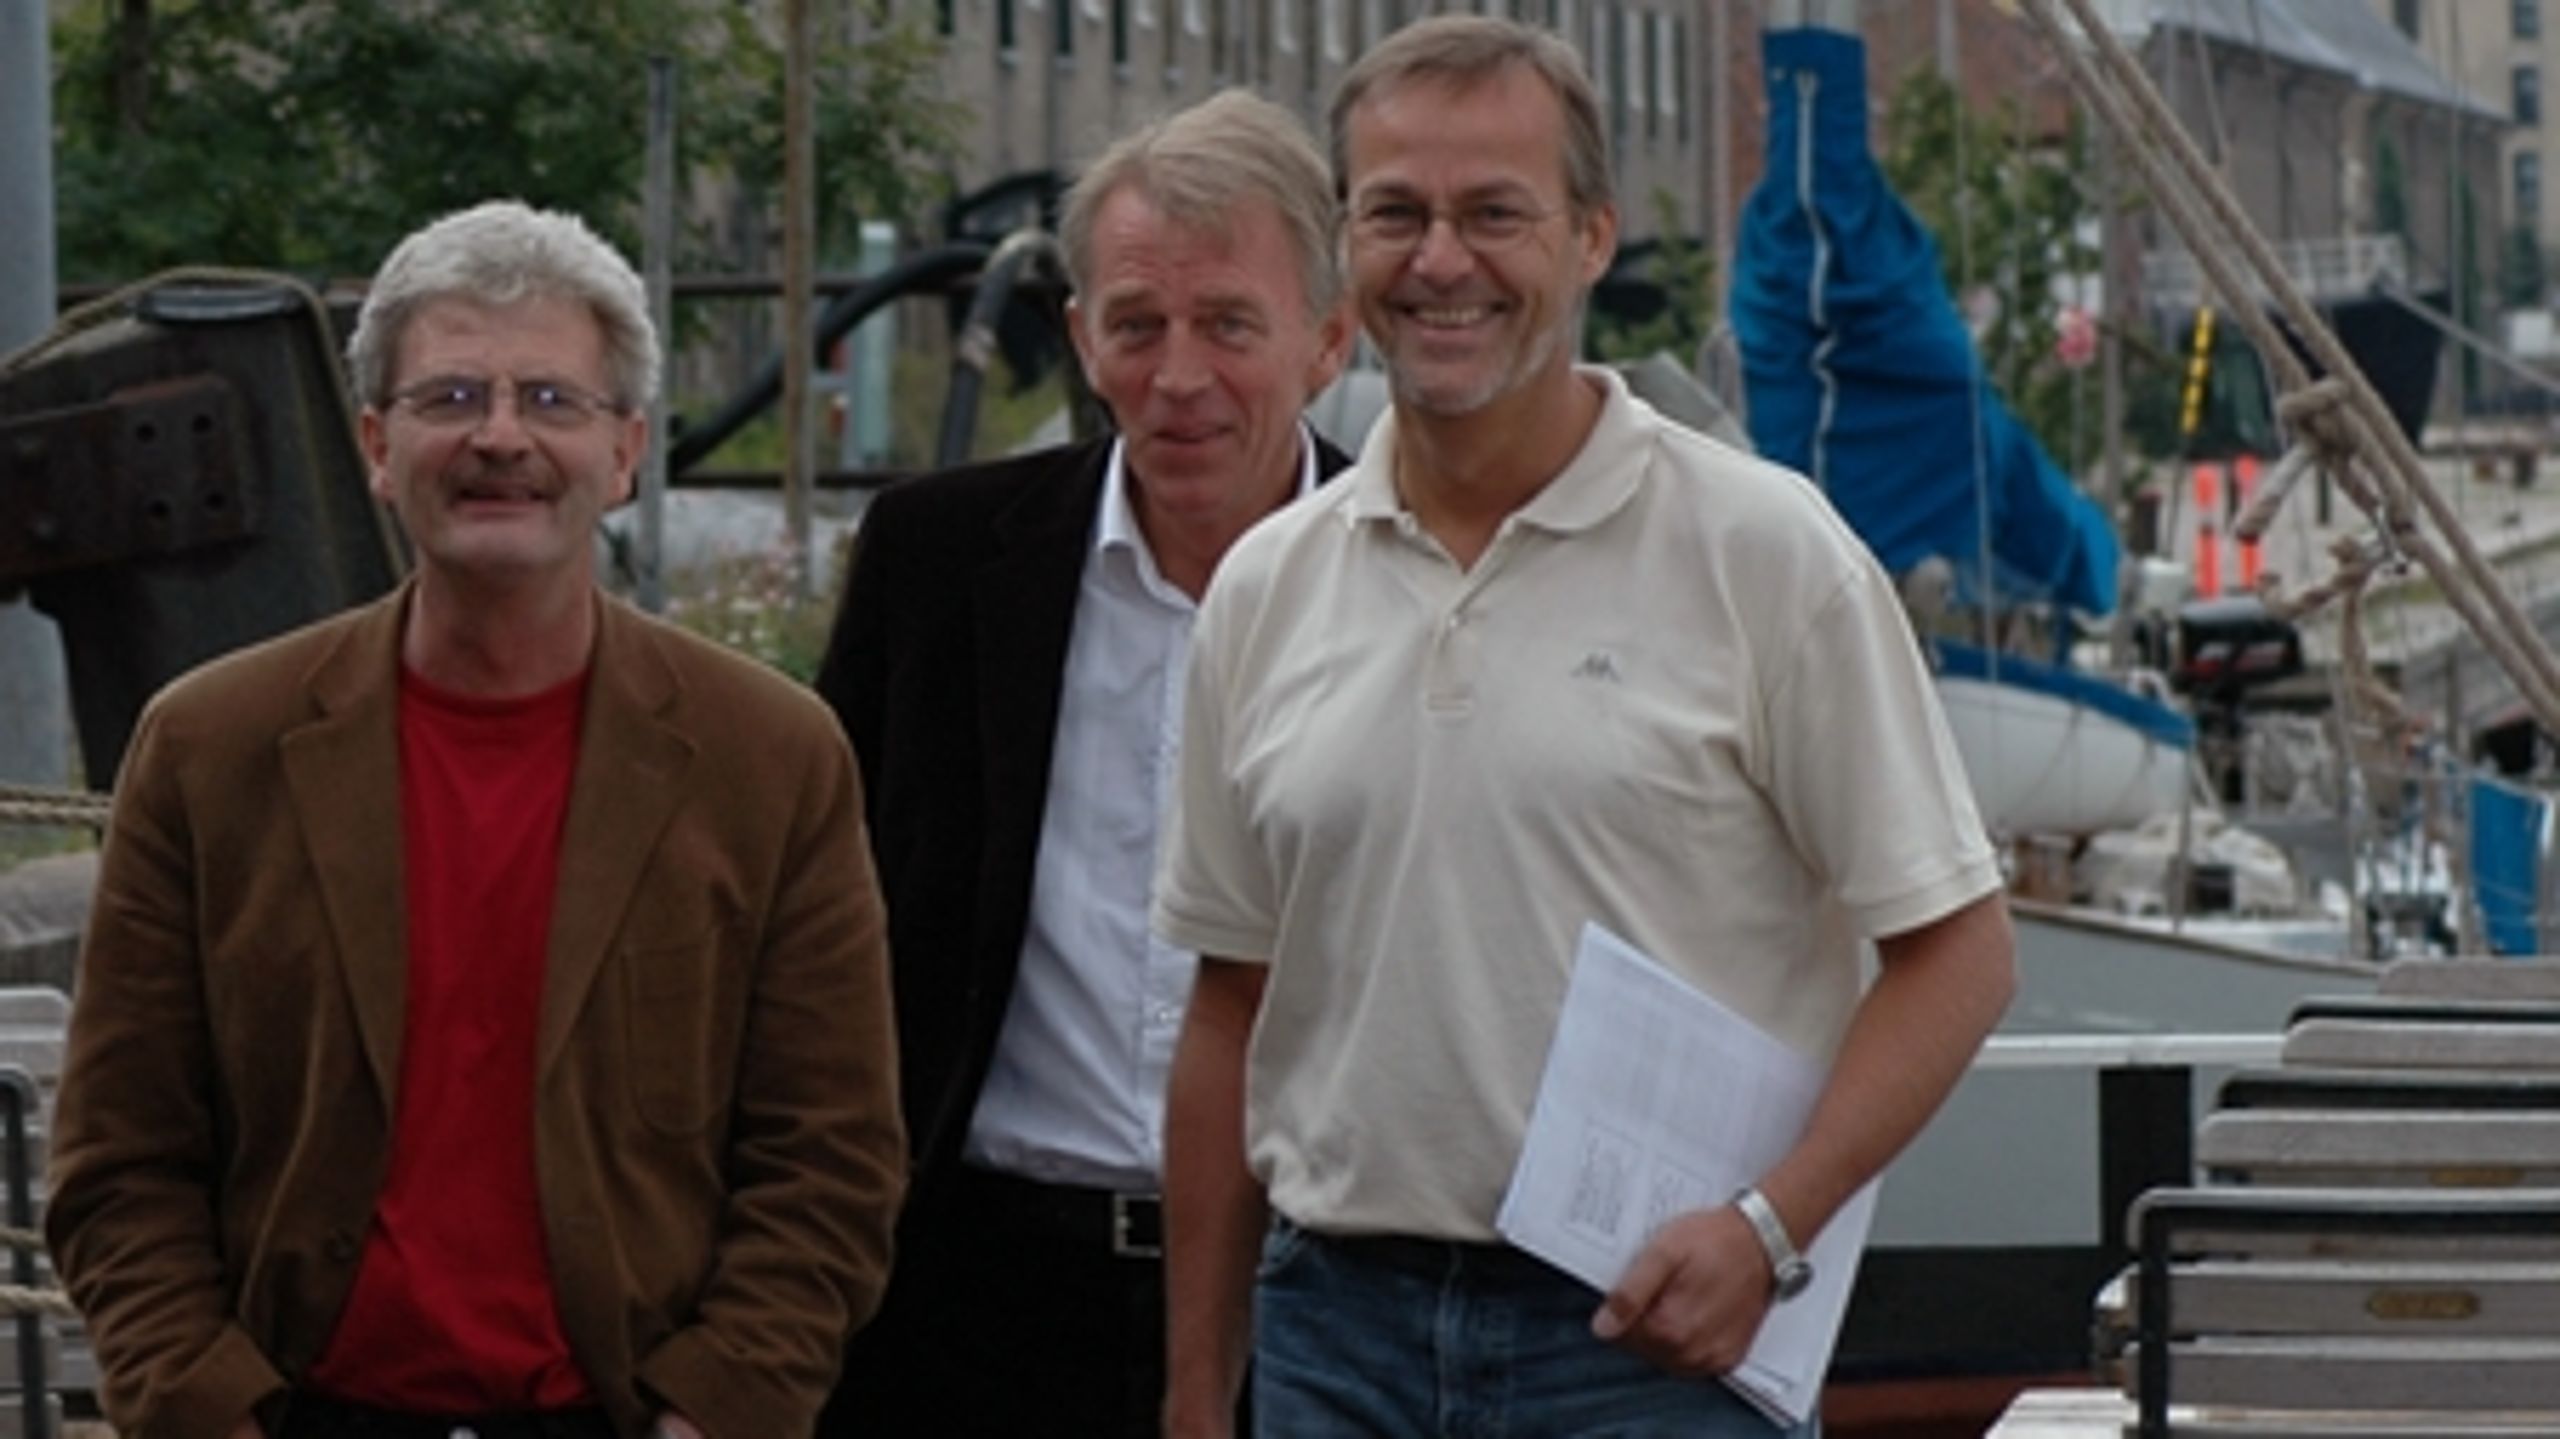 SF's gruppeformand Ole Sohn med sin nuværende og tidligere partiformand ved sommergruppemødet i 2005.